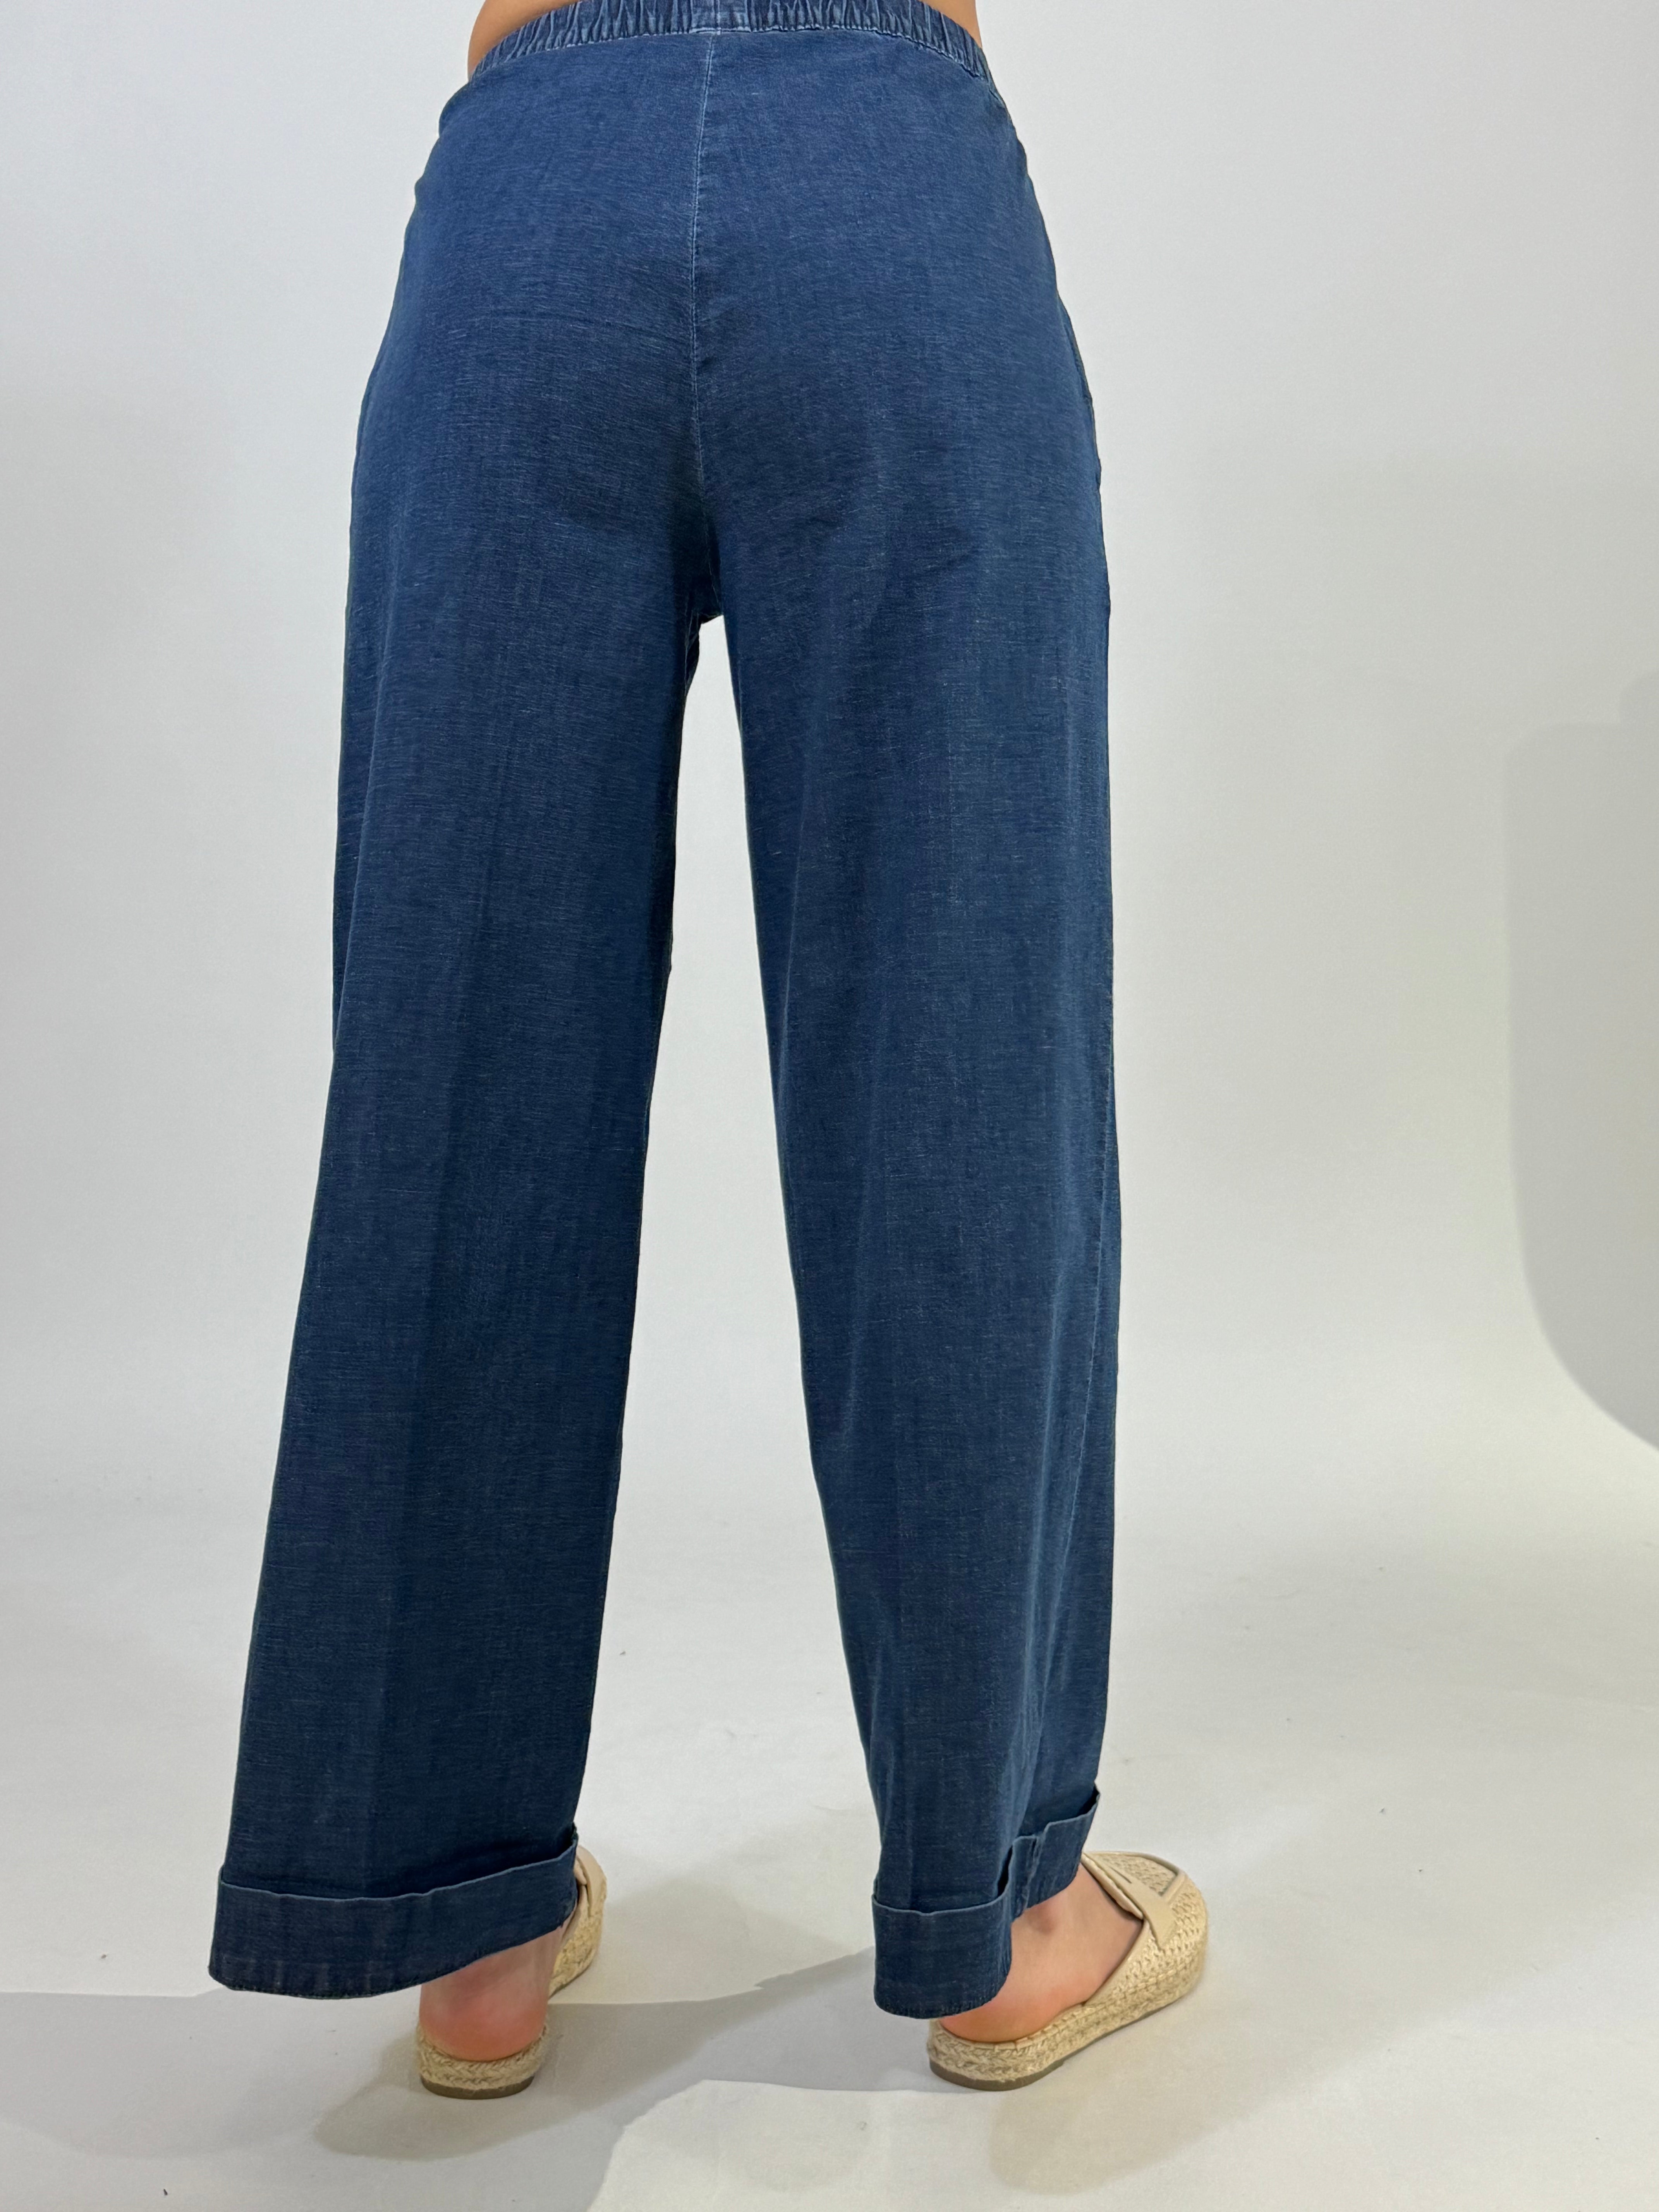 Pantalone Ragno jeans chambray CROPPED